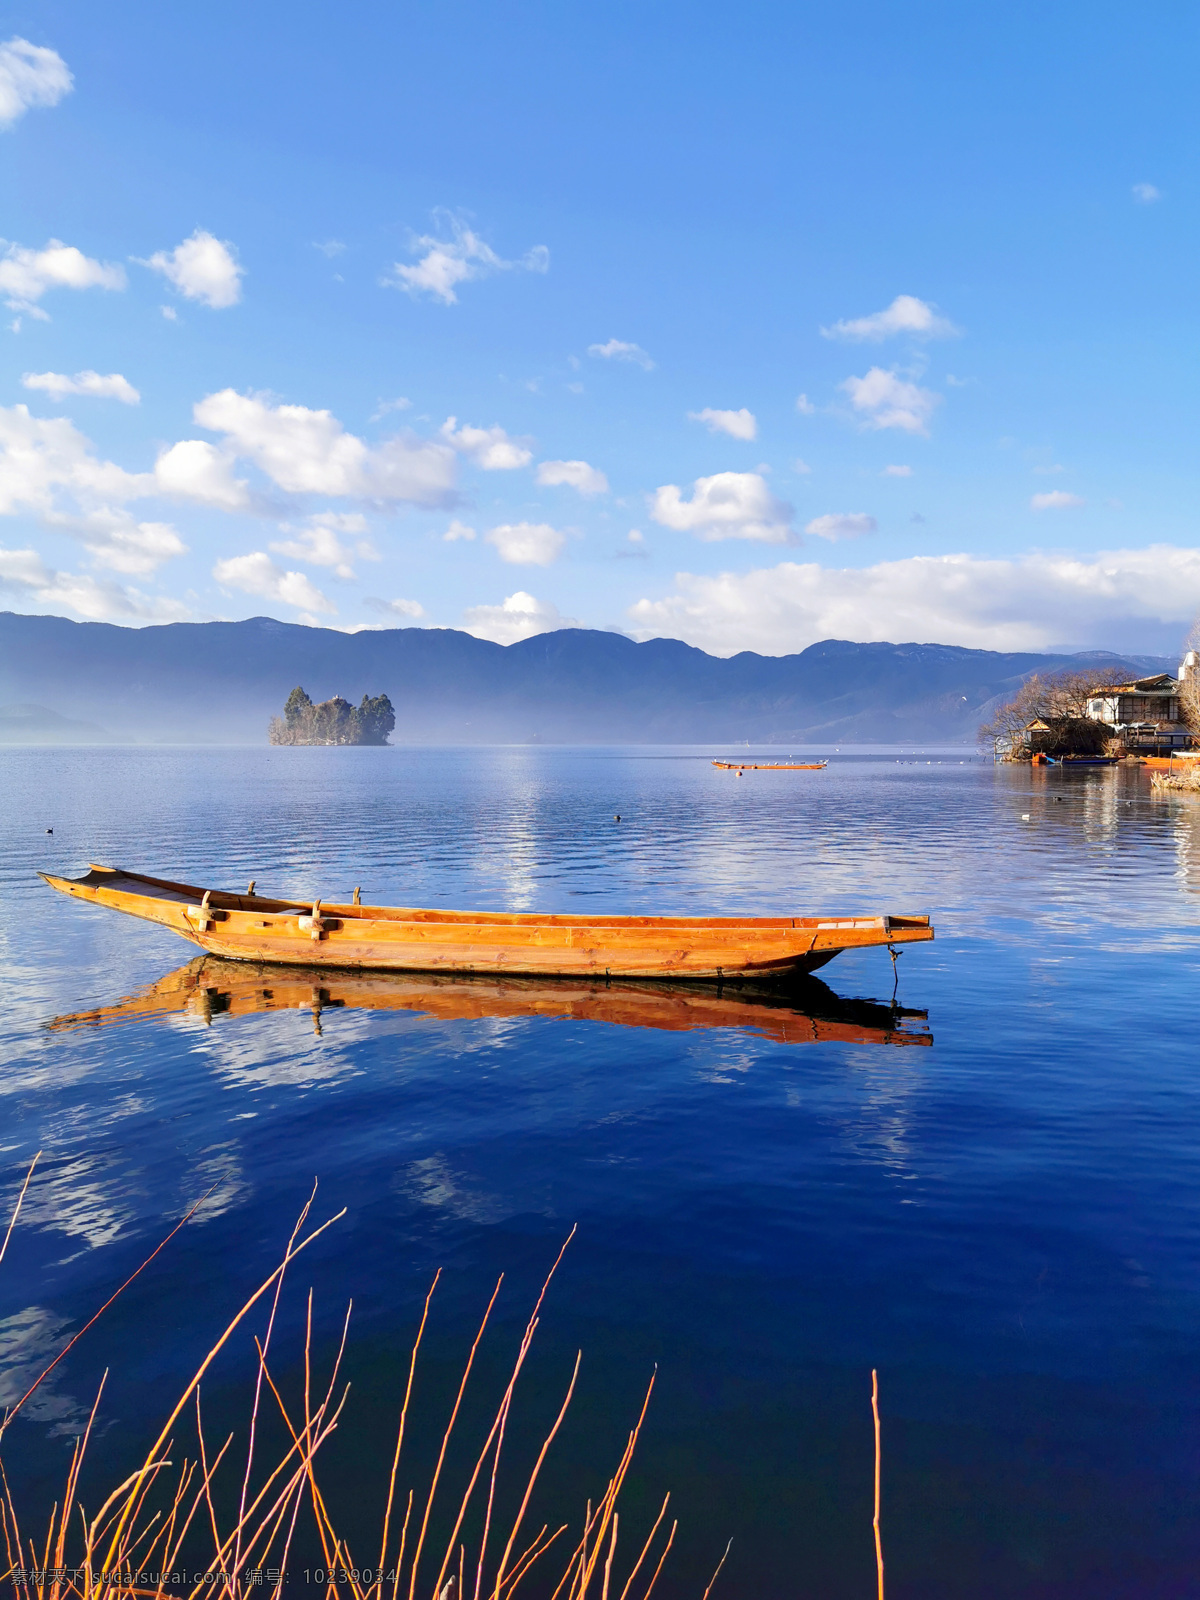 天空之镜图片 湖光山色 水面倒影 海天一线 蓝天白云 小舟湖泊 岛屿 自然风景 自然景观